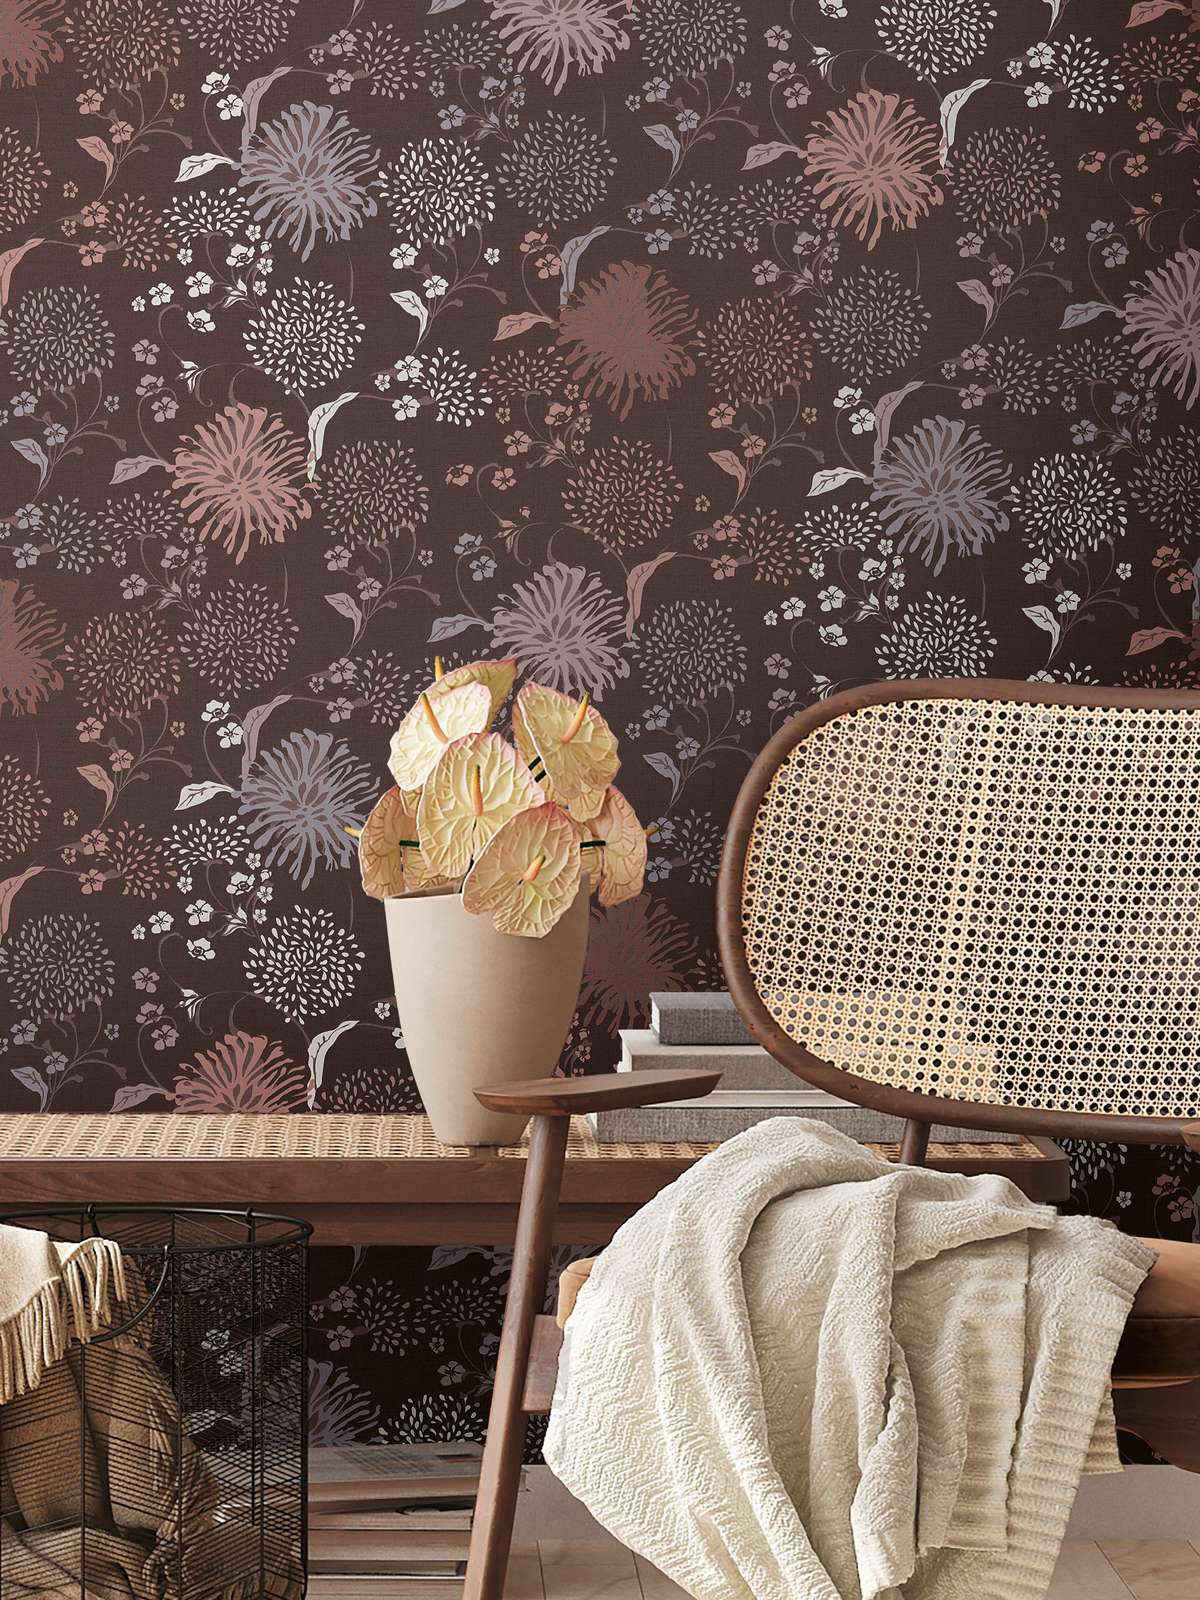             Blumentapete mit verspieltem Muster & Leinenoptik – Weinrot, Grau, Weiß
        